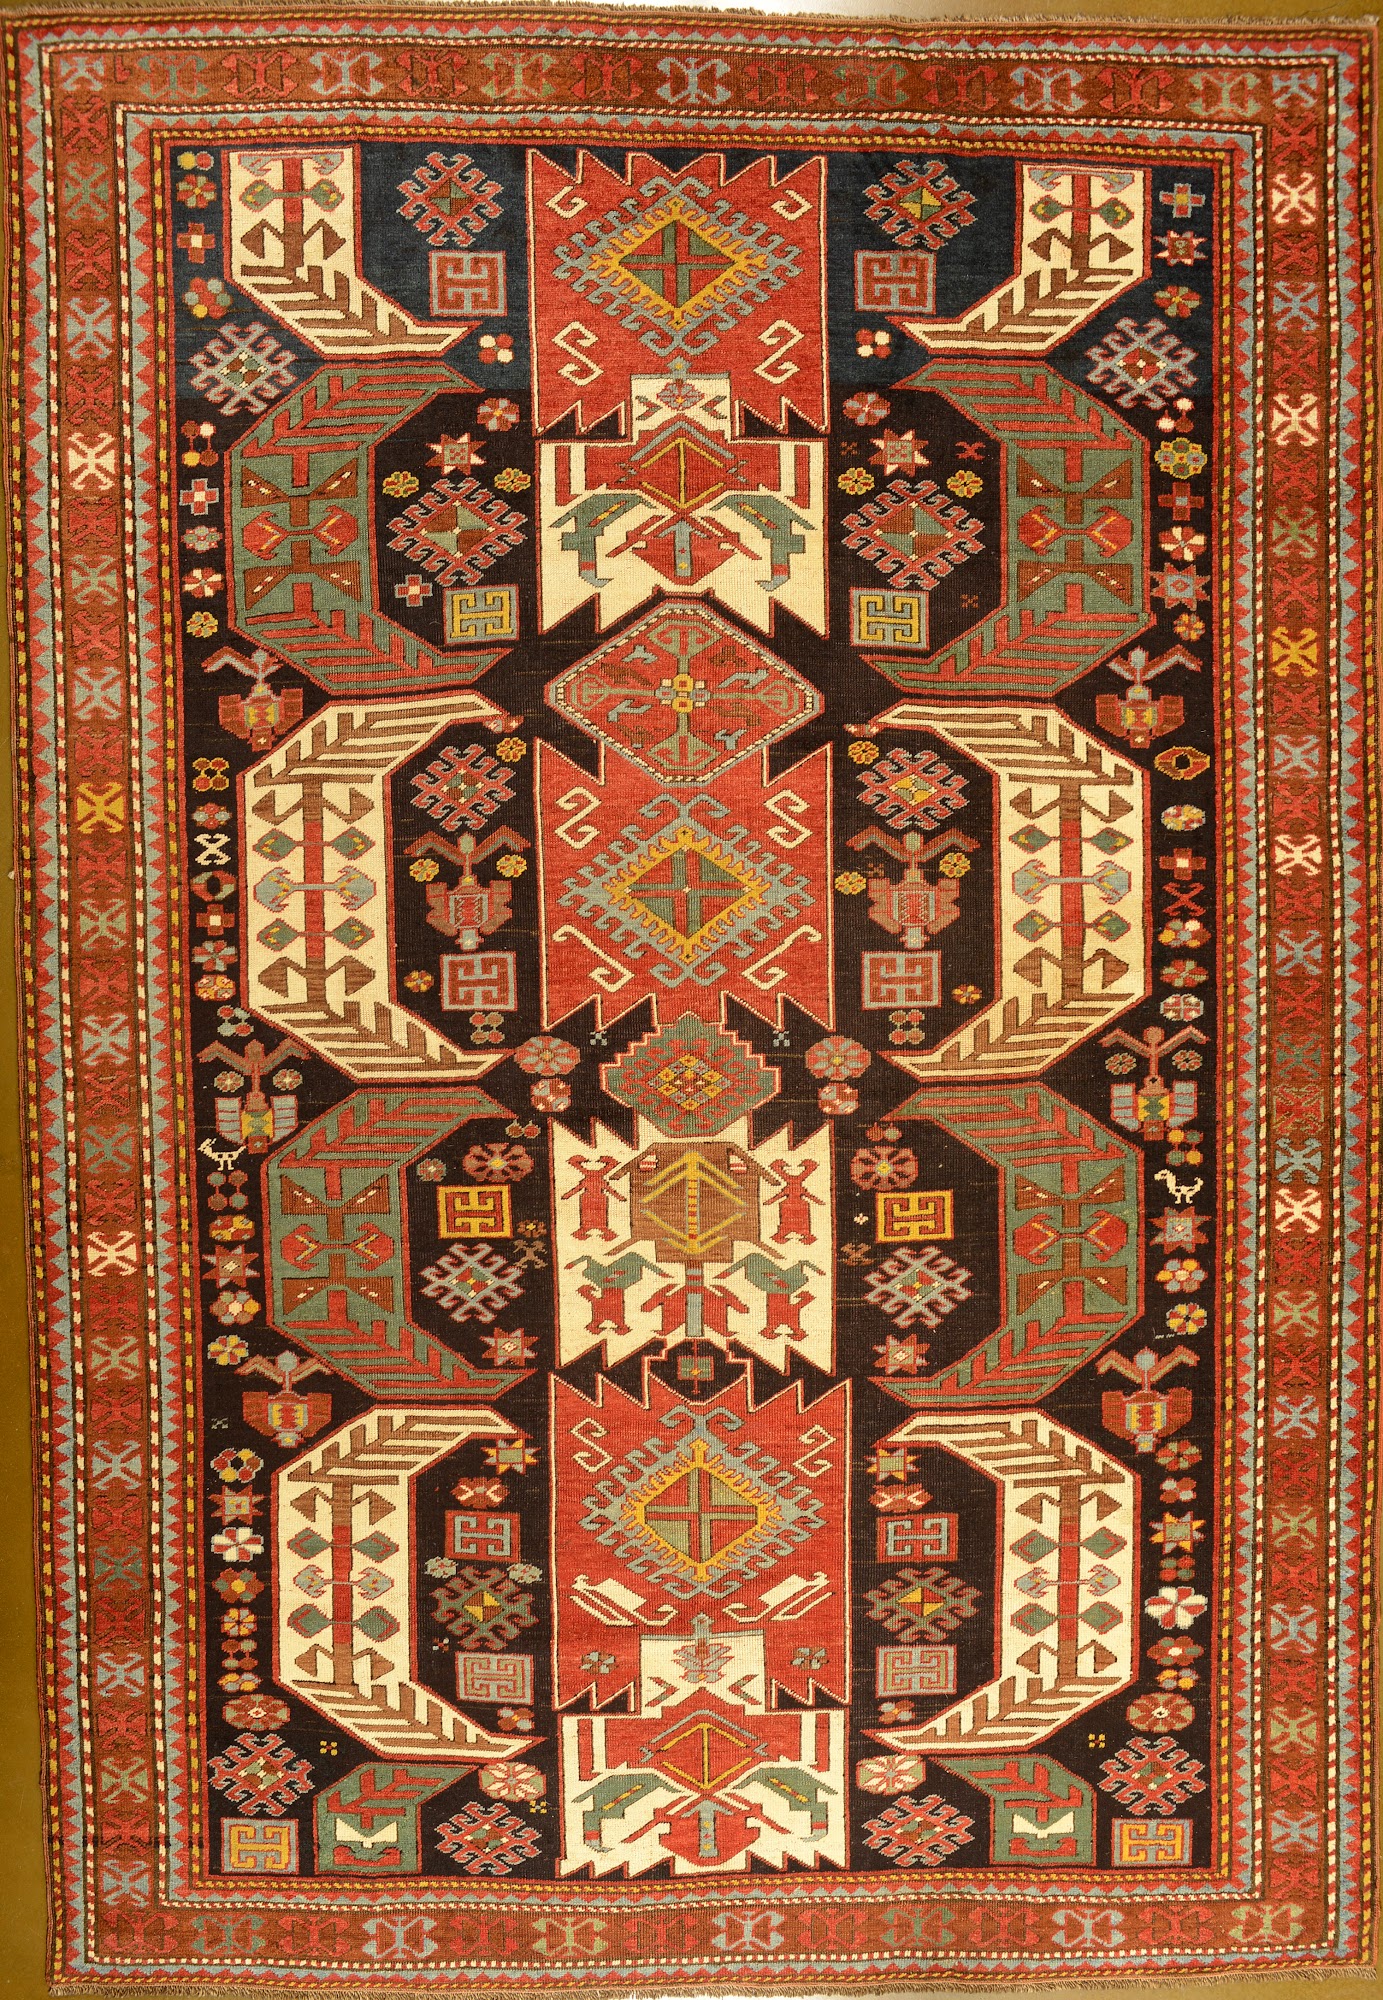 Woven Art Antique & New Decorative Carpets